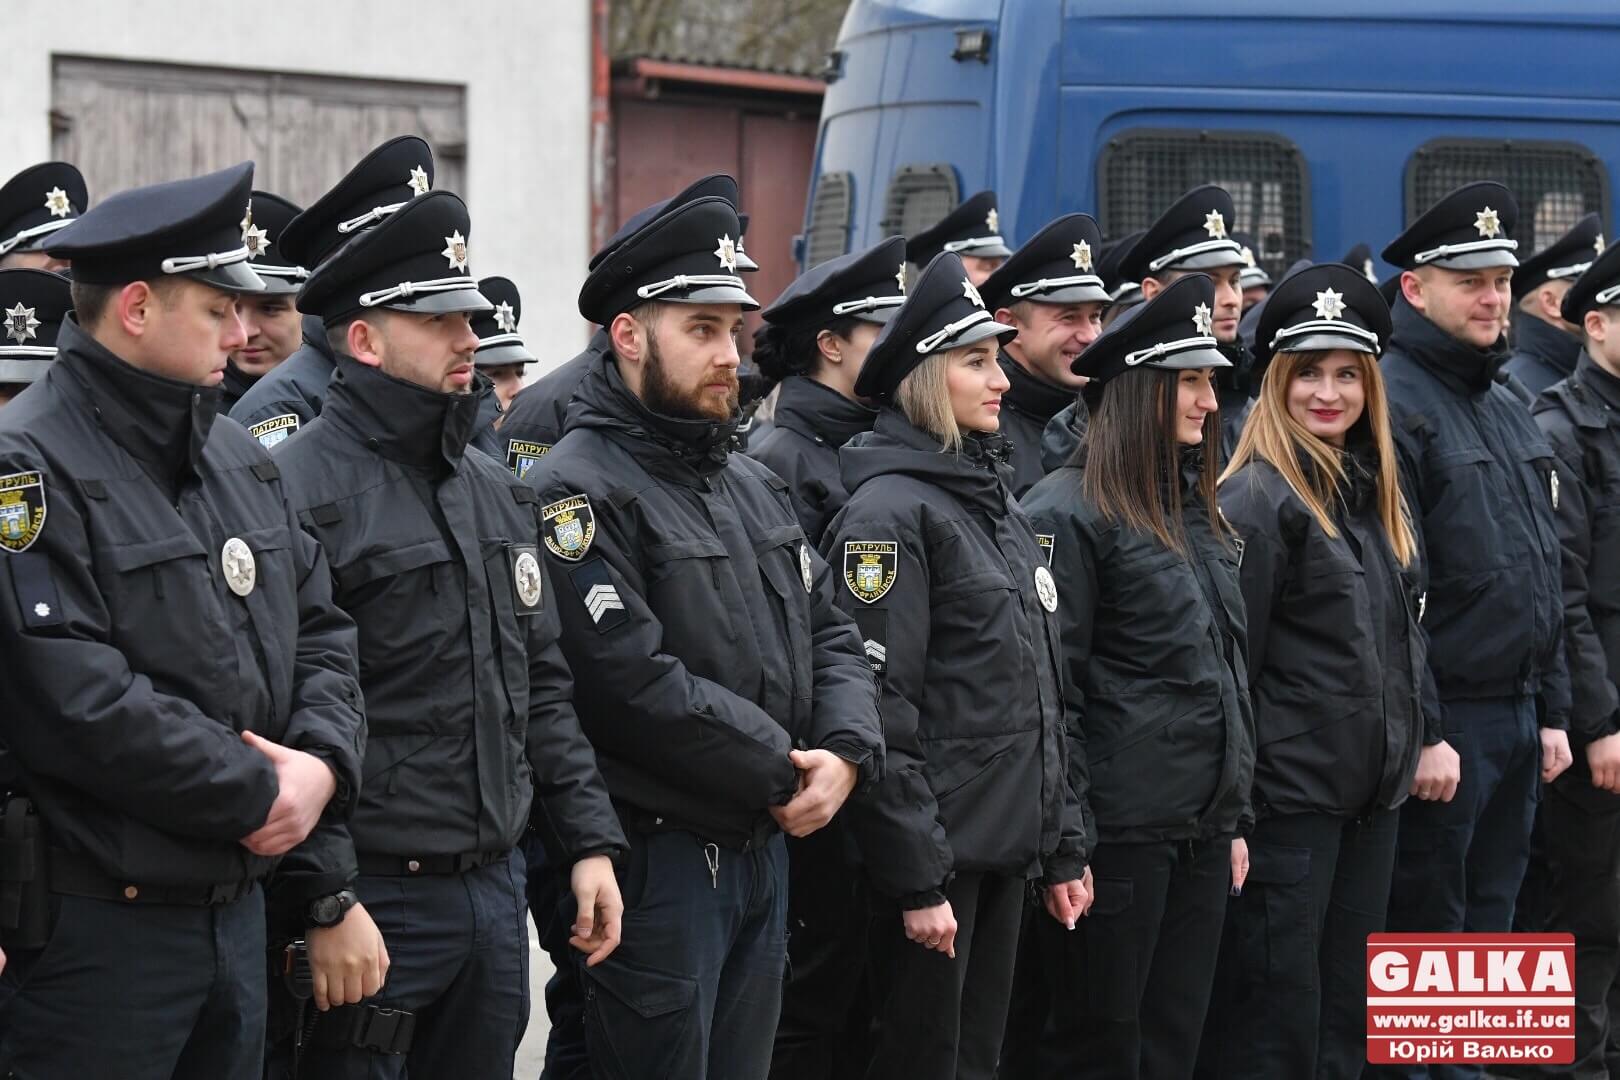 “Насправді у нас все добре”. Четверту річницю роботи патрульної поліції відзначили в Івано-Франківську (ФОТО)